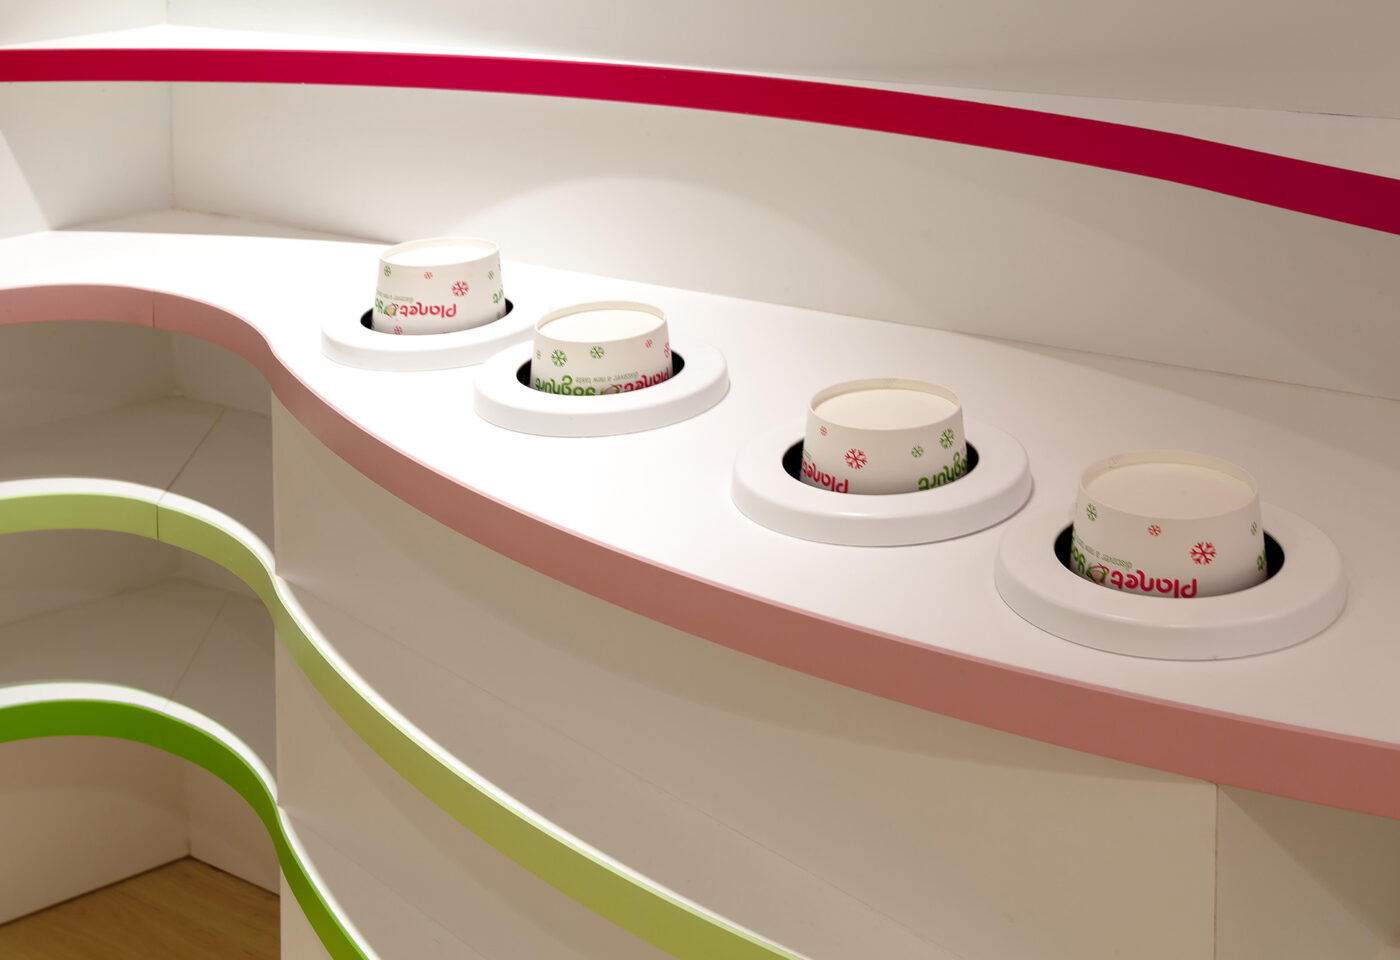 Interieur horecazaak Planet Yoghurt - Winkelinrichting Gent - Froyen & Zeitler